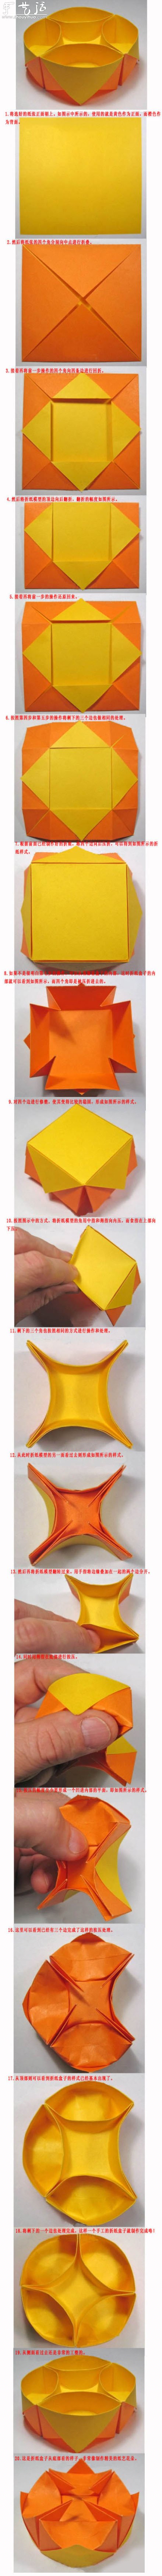 圆形空间收纳盒的折纸教程